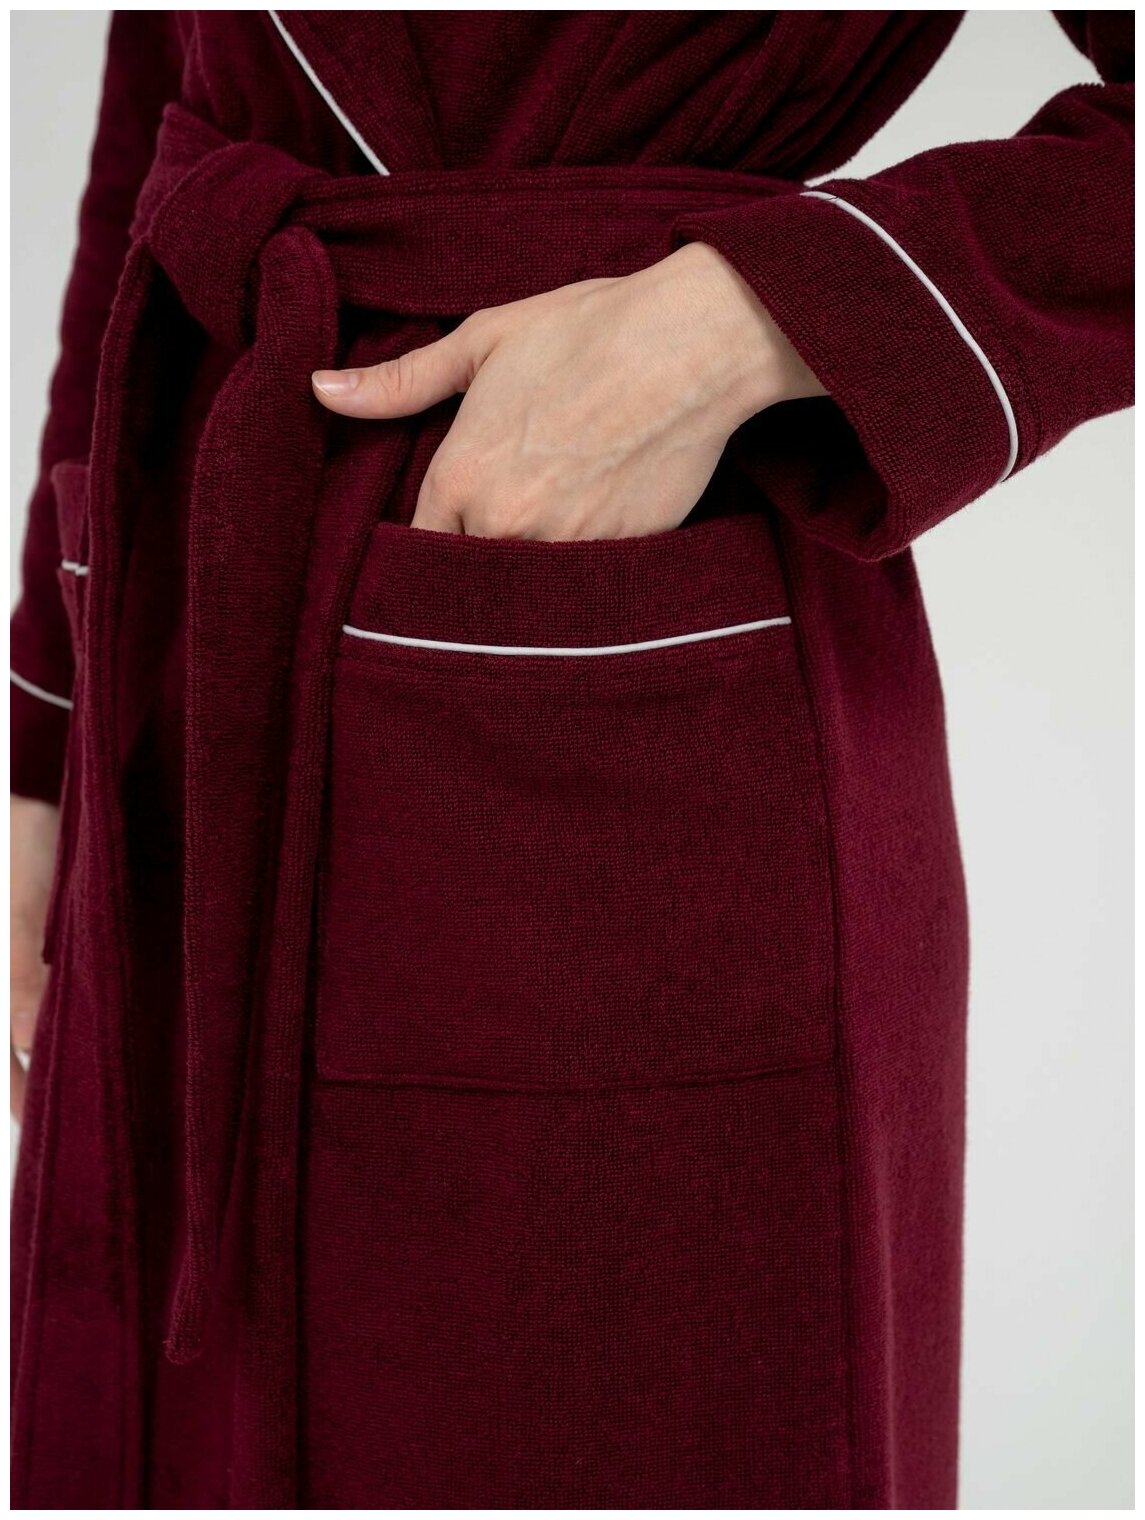 Женский махровый халат с кантом Росхалат, темно-бордовый. Размер 42-44 - фотография № 4